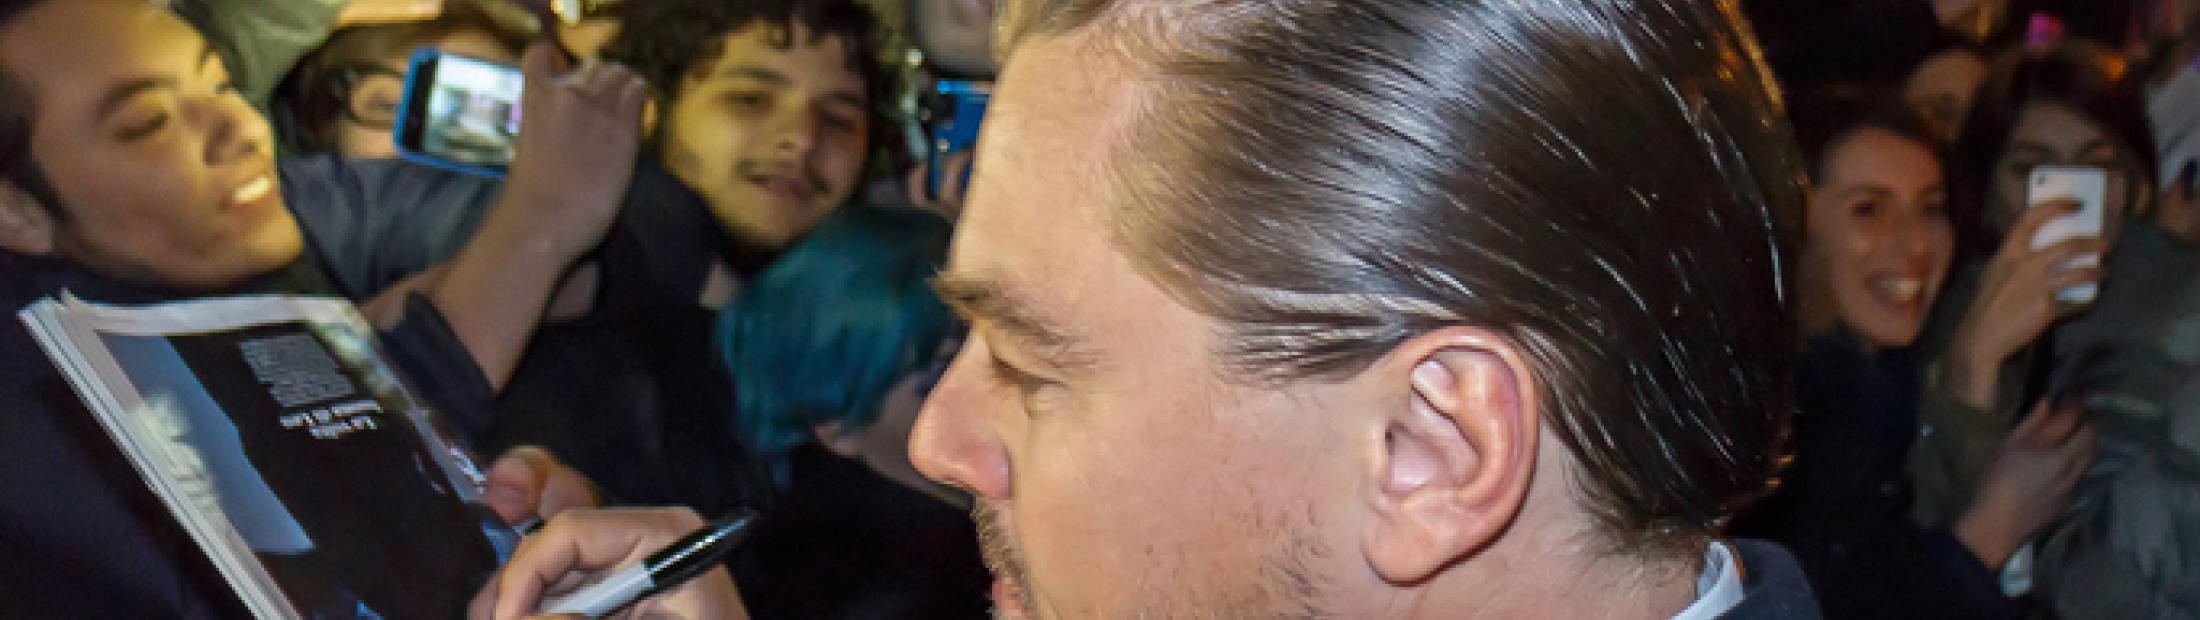 Leonardo DiCaprio y su documental: cambio climático